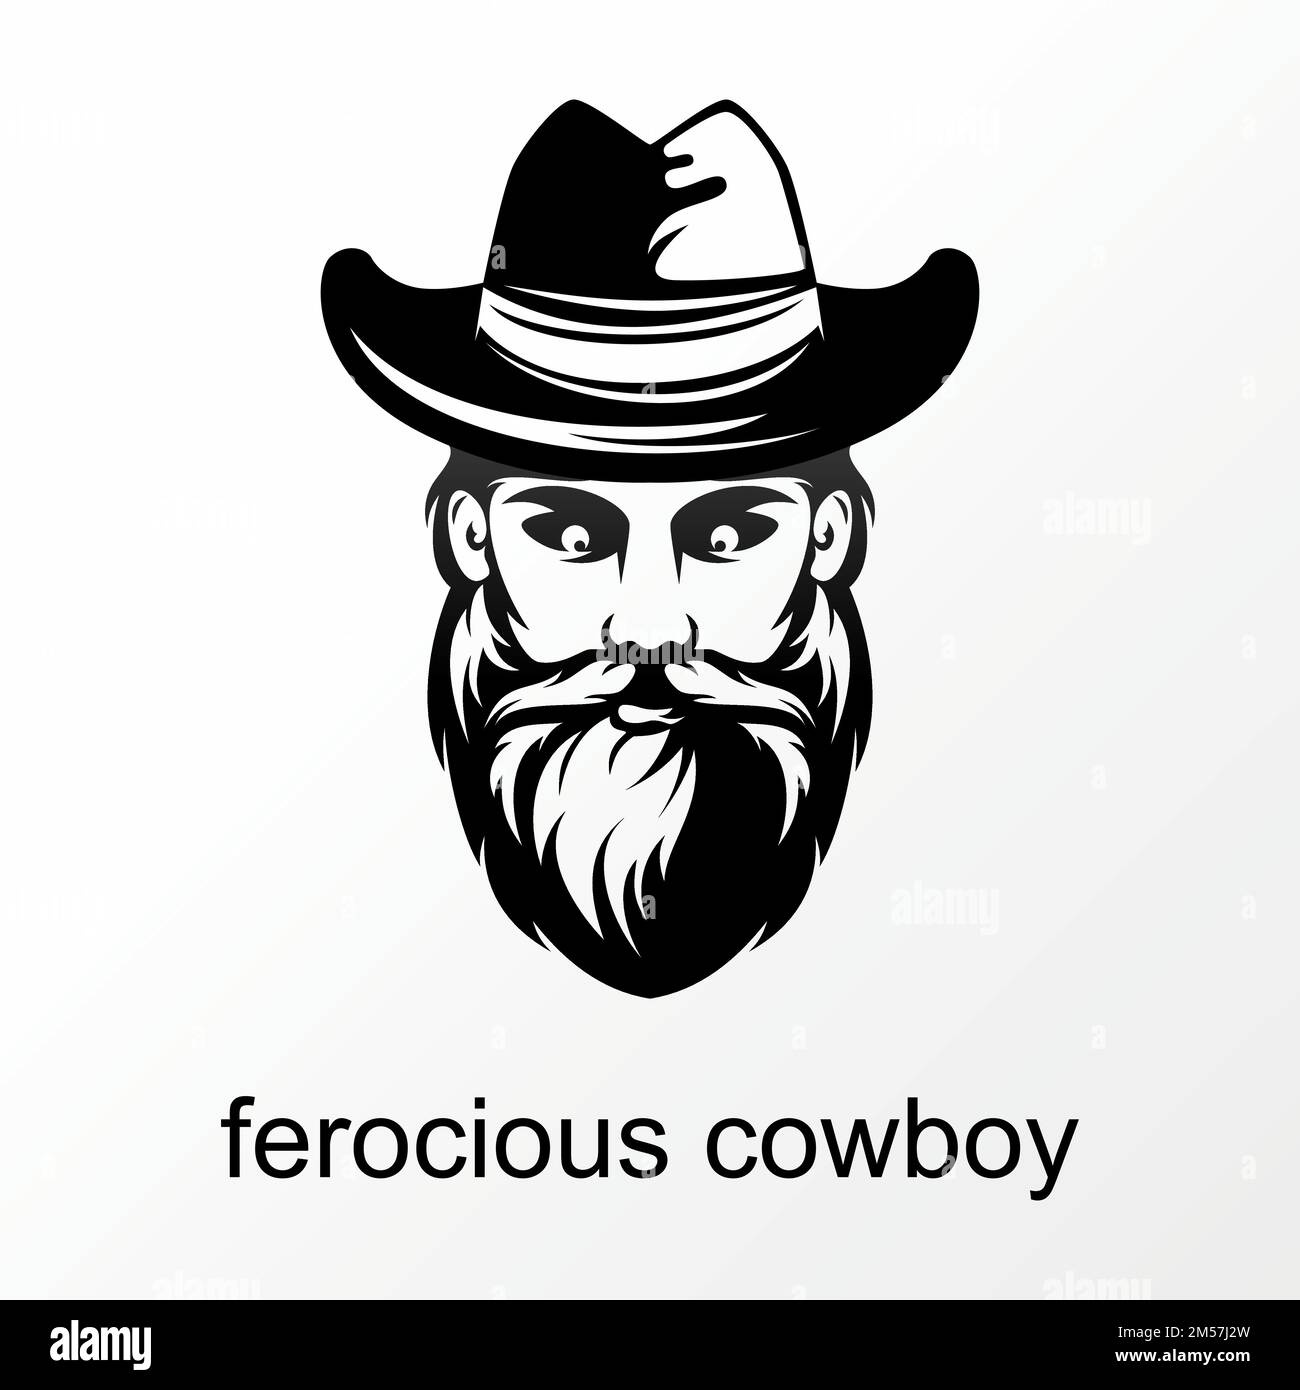 Schlichtes und einzigartiges wildes Cowboygesicht mit Hut, Schnurrbart und grafischem Bart-Logo, Vektormaterial. r in Bezug auf Gentleman oder Charakter Stock Vektor